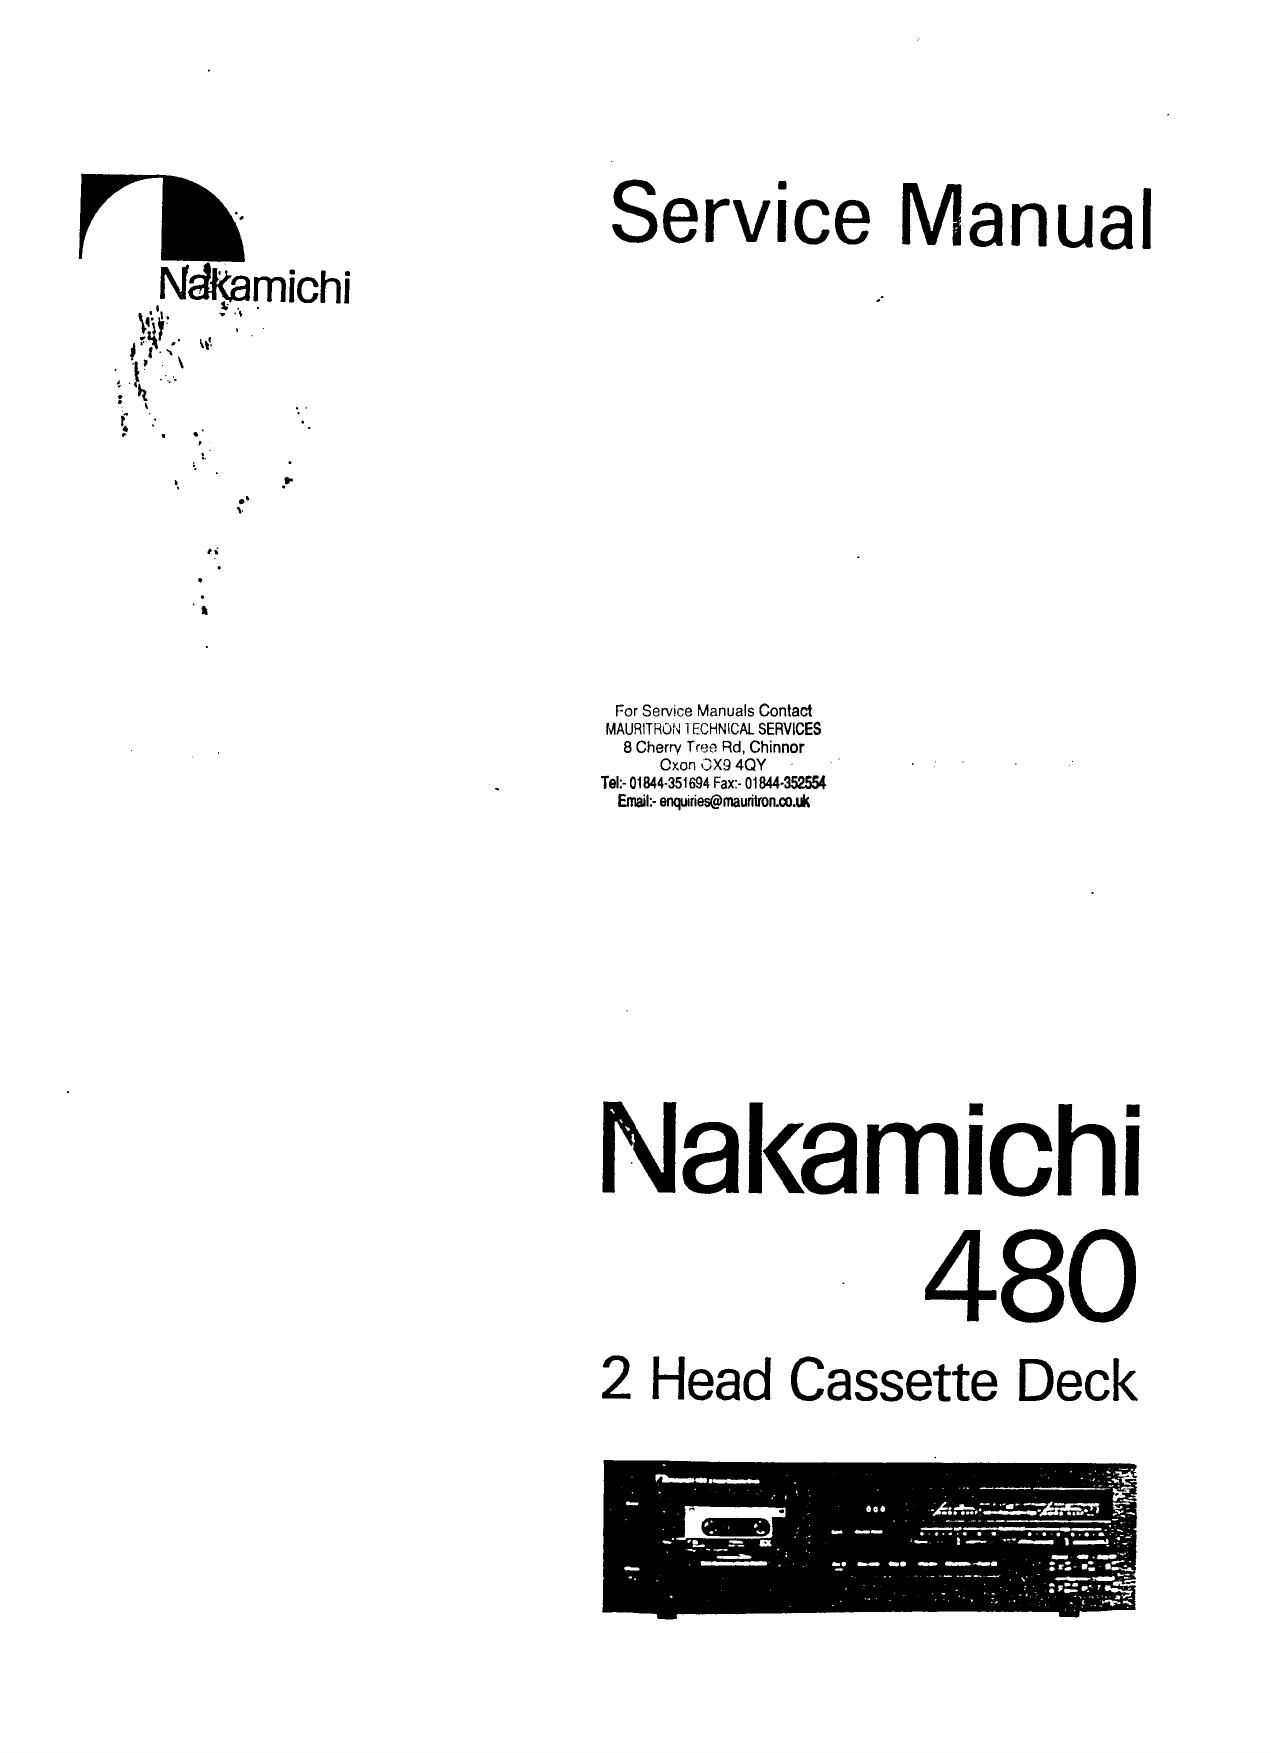 Nakamichi 480 Service Manual